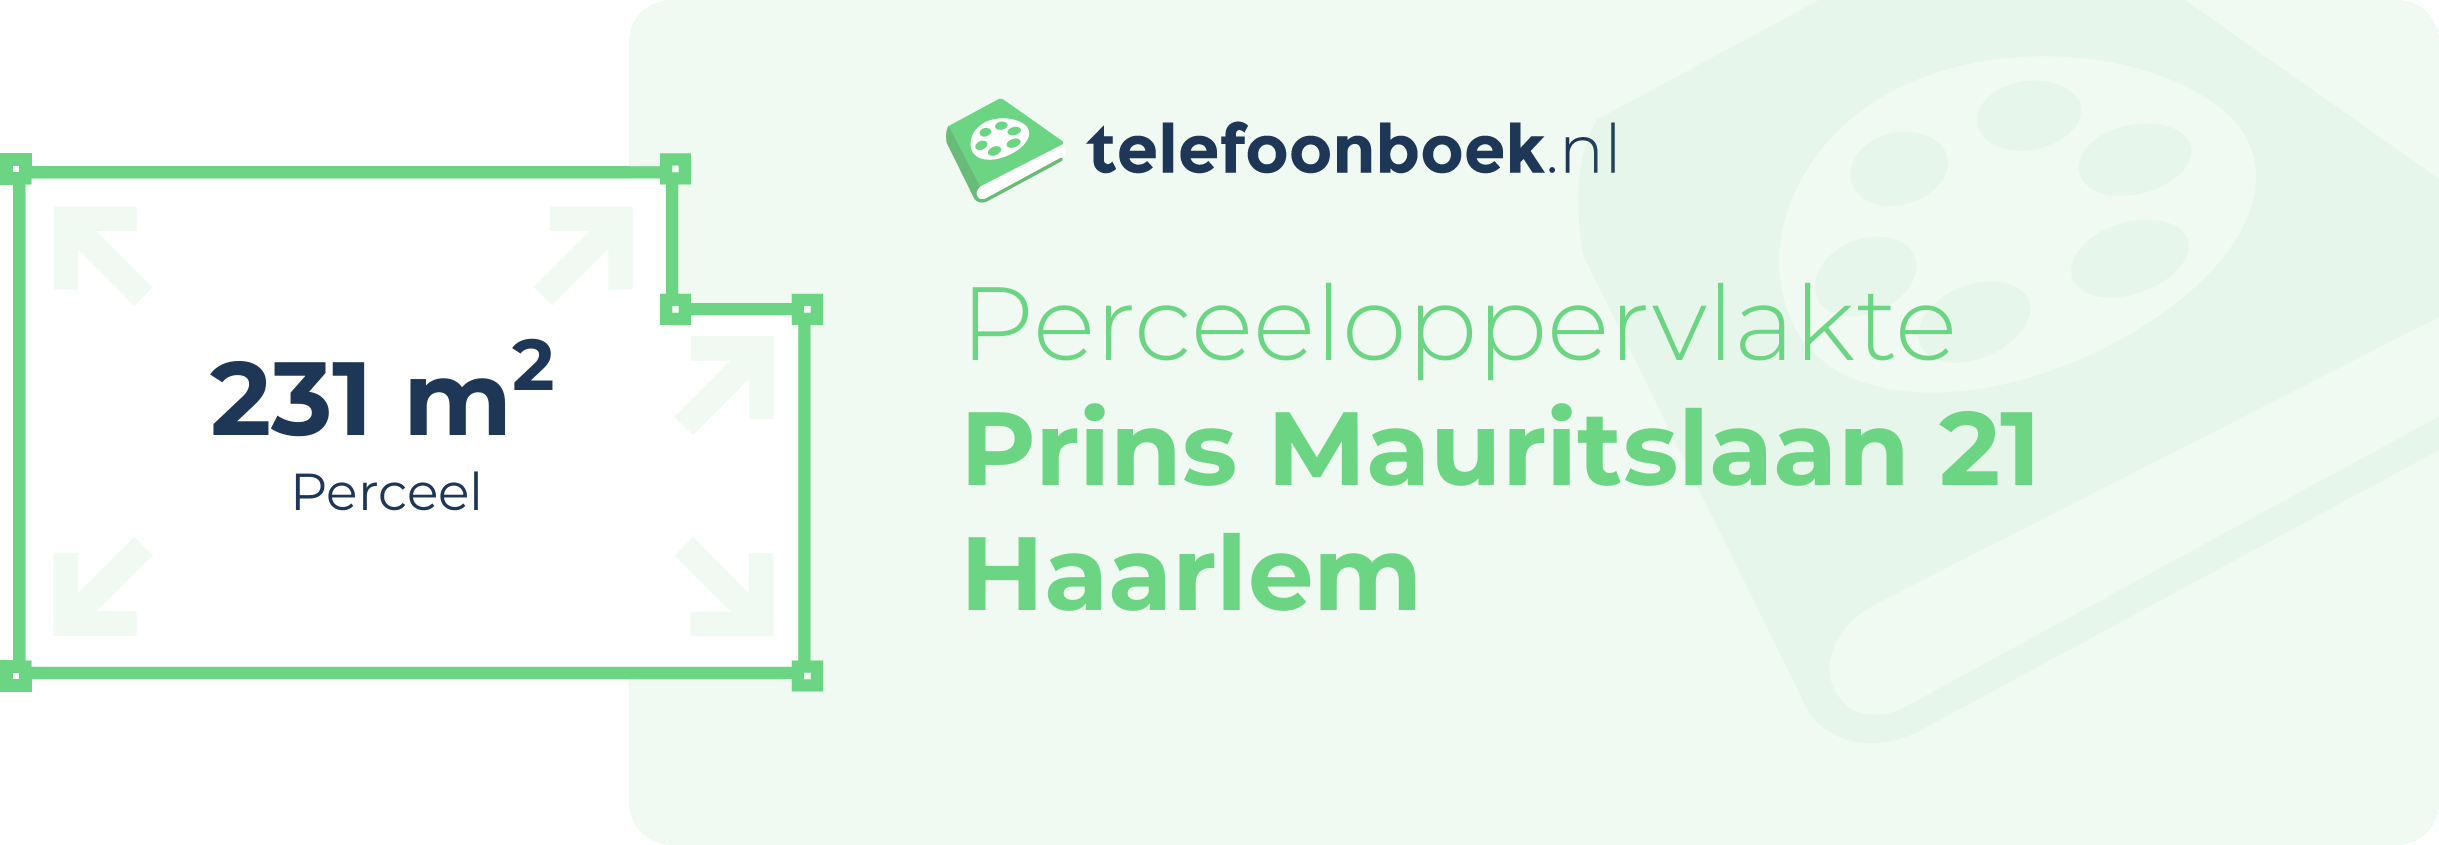 Perceeloppervlakte Prins Mauritslaan 21 Haarlem